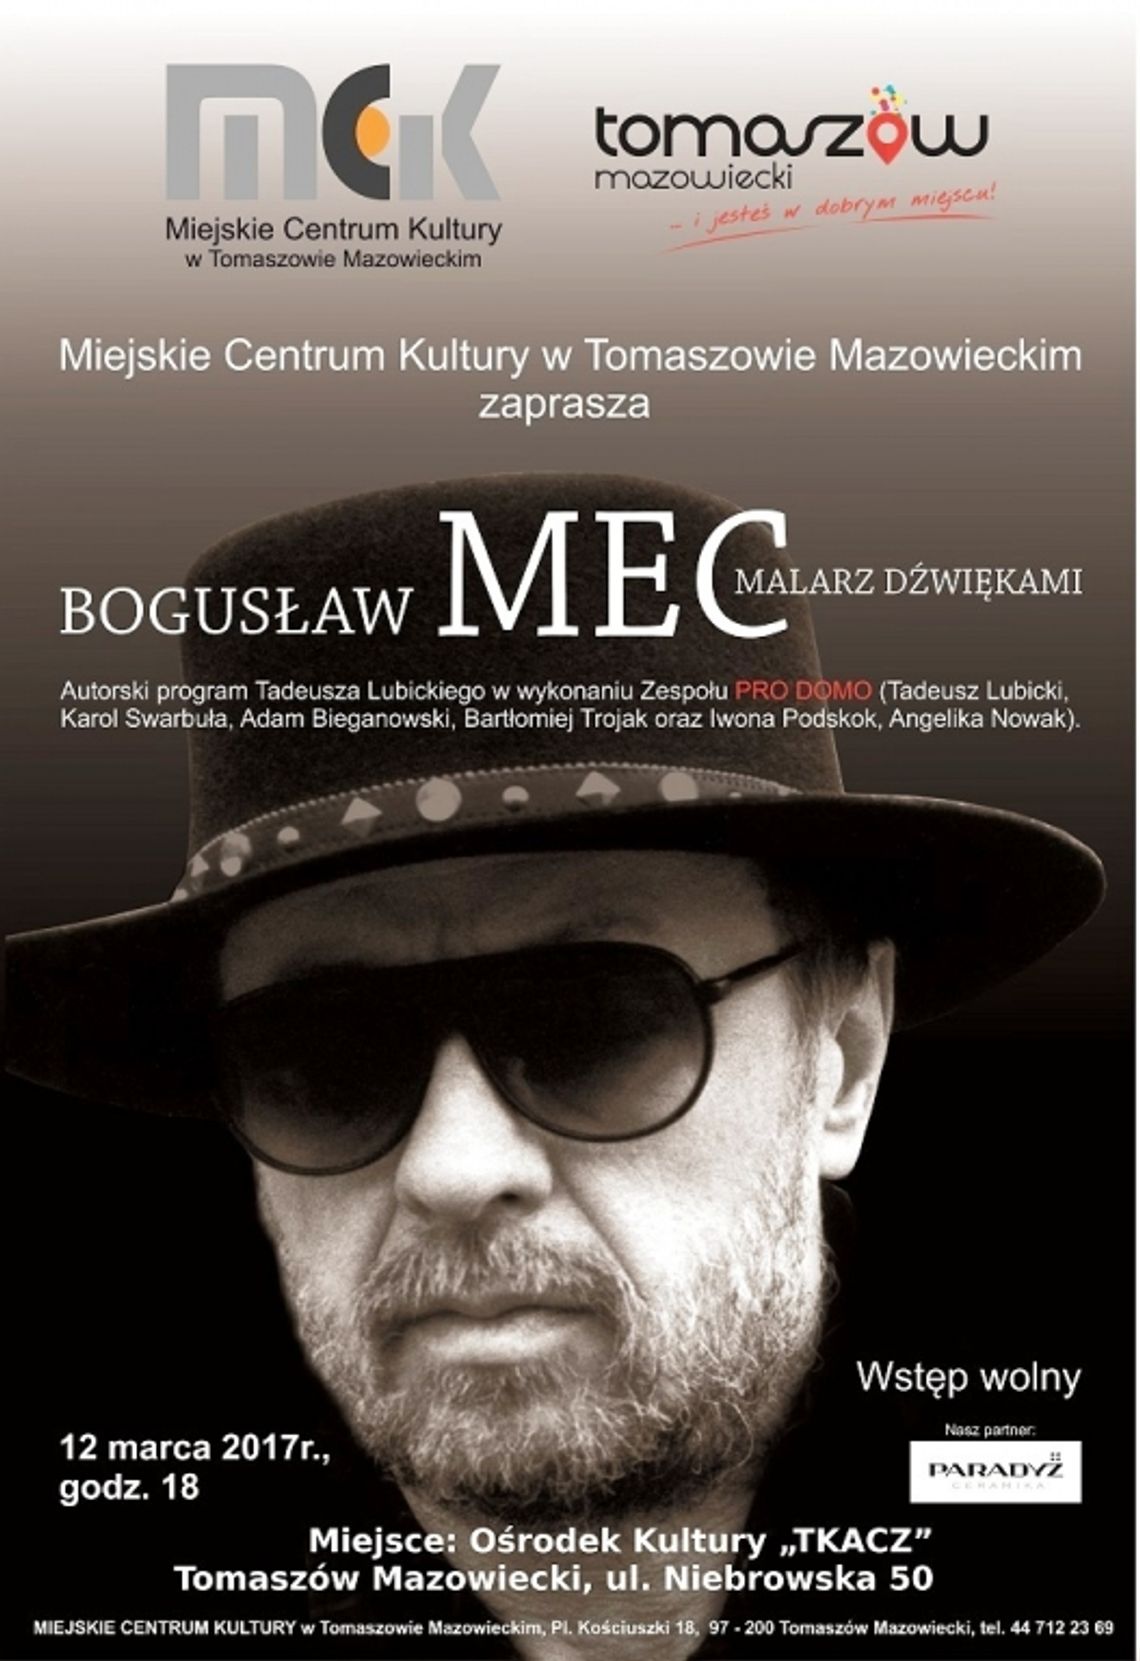 &quot;Bogusław Mec - malarz dźwiękami